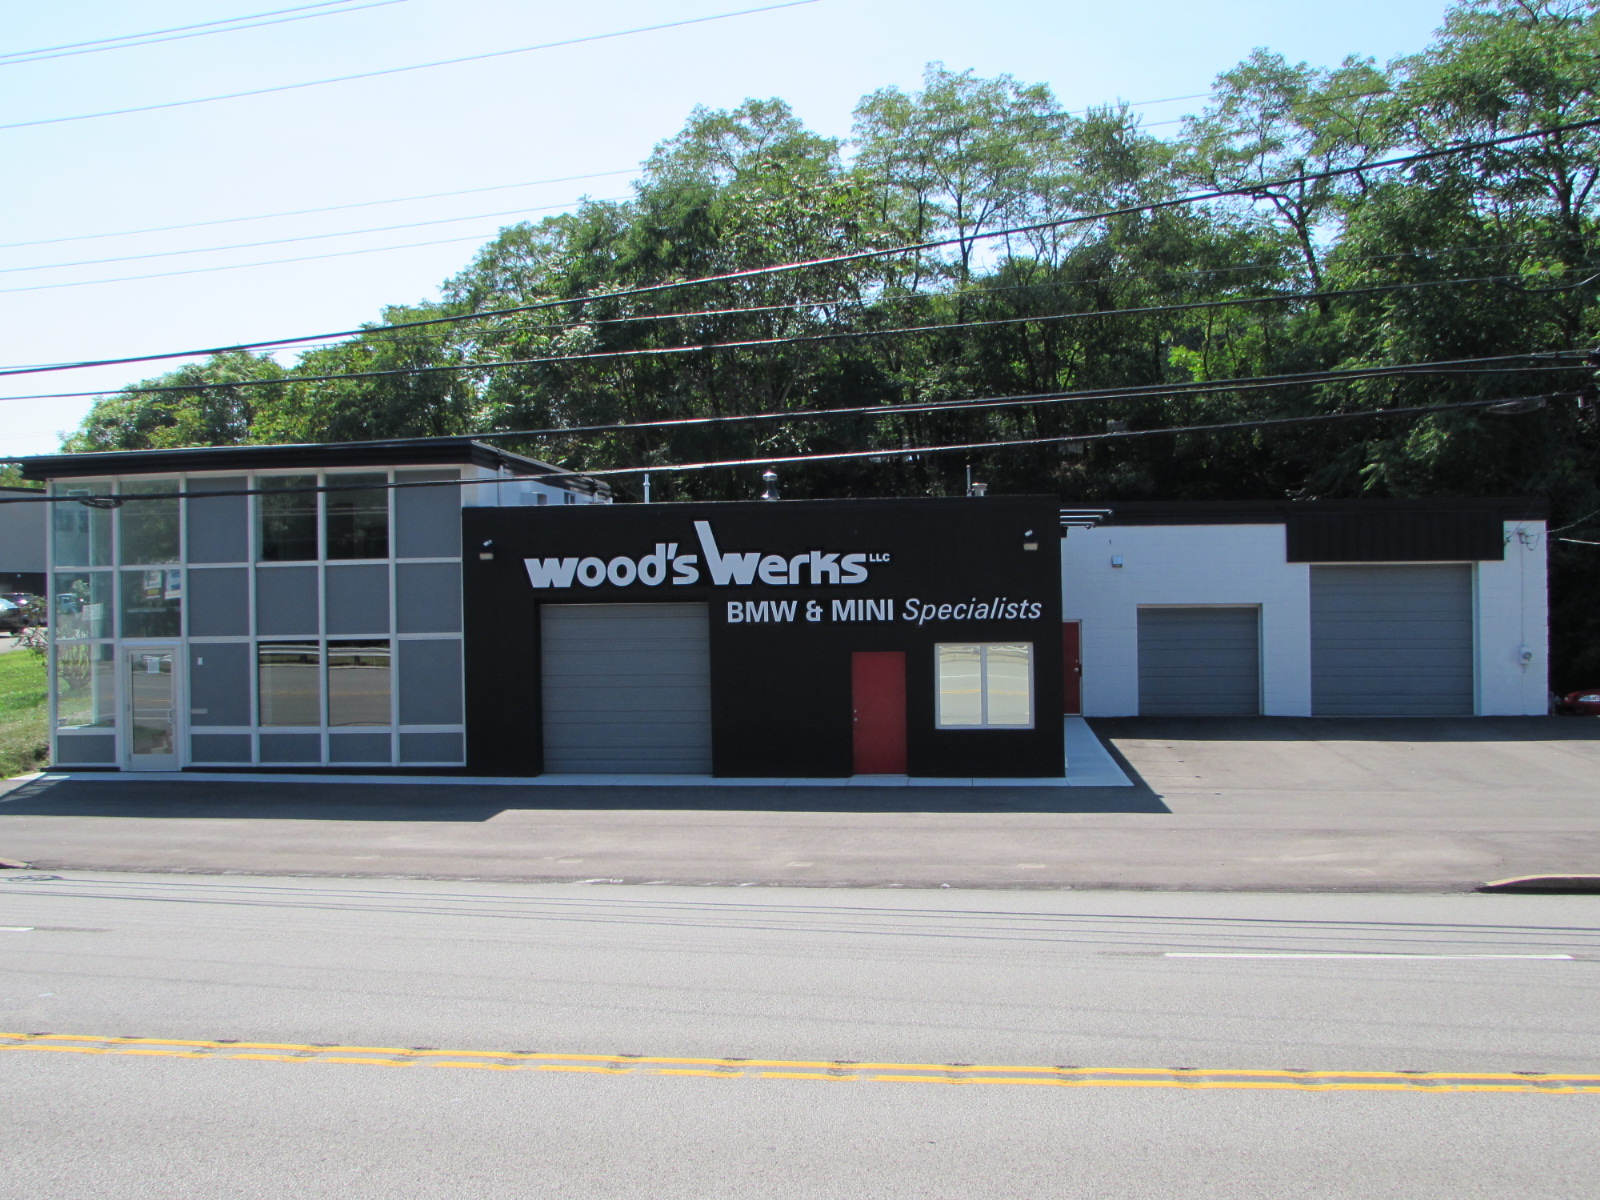 Wood's Werks LLC BMW & MINI Specialists